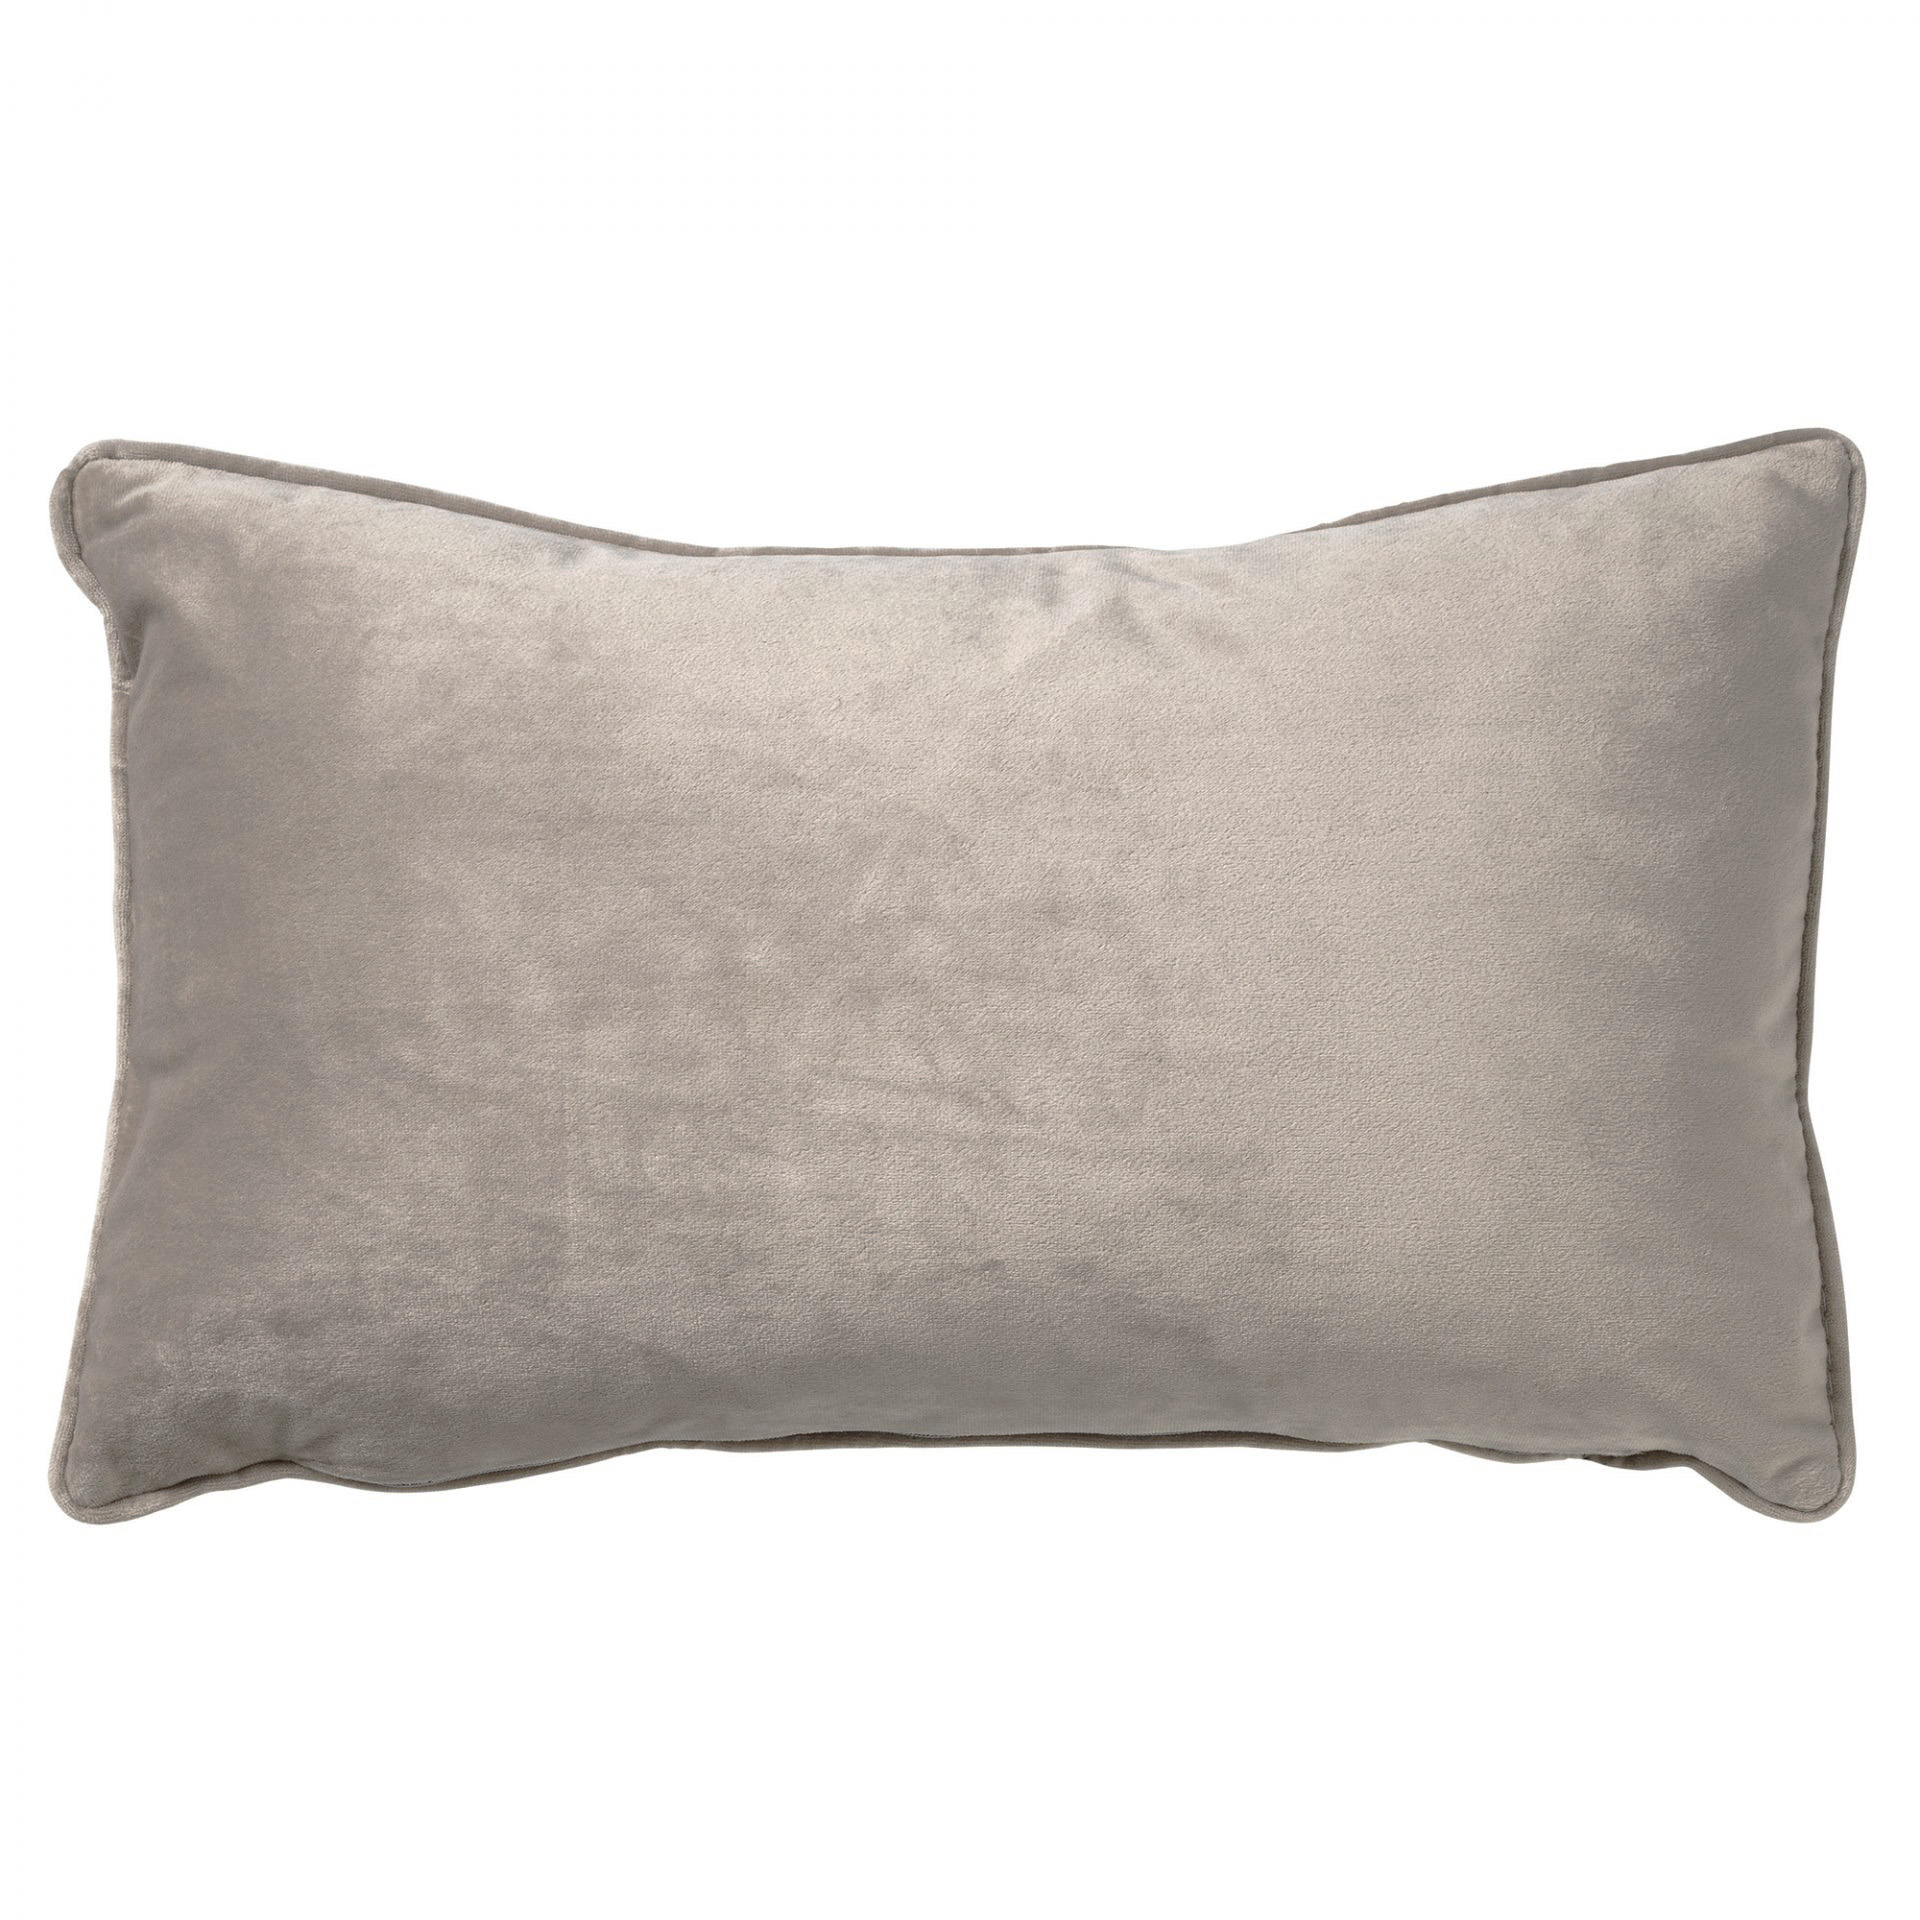 FINN - Cushion 30x50 cm Pumice Stone - beige